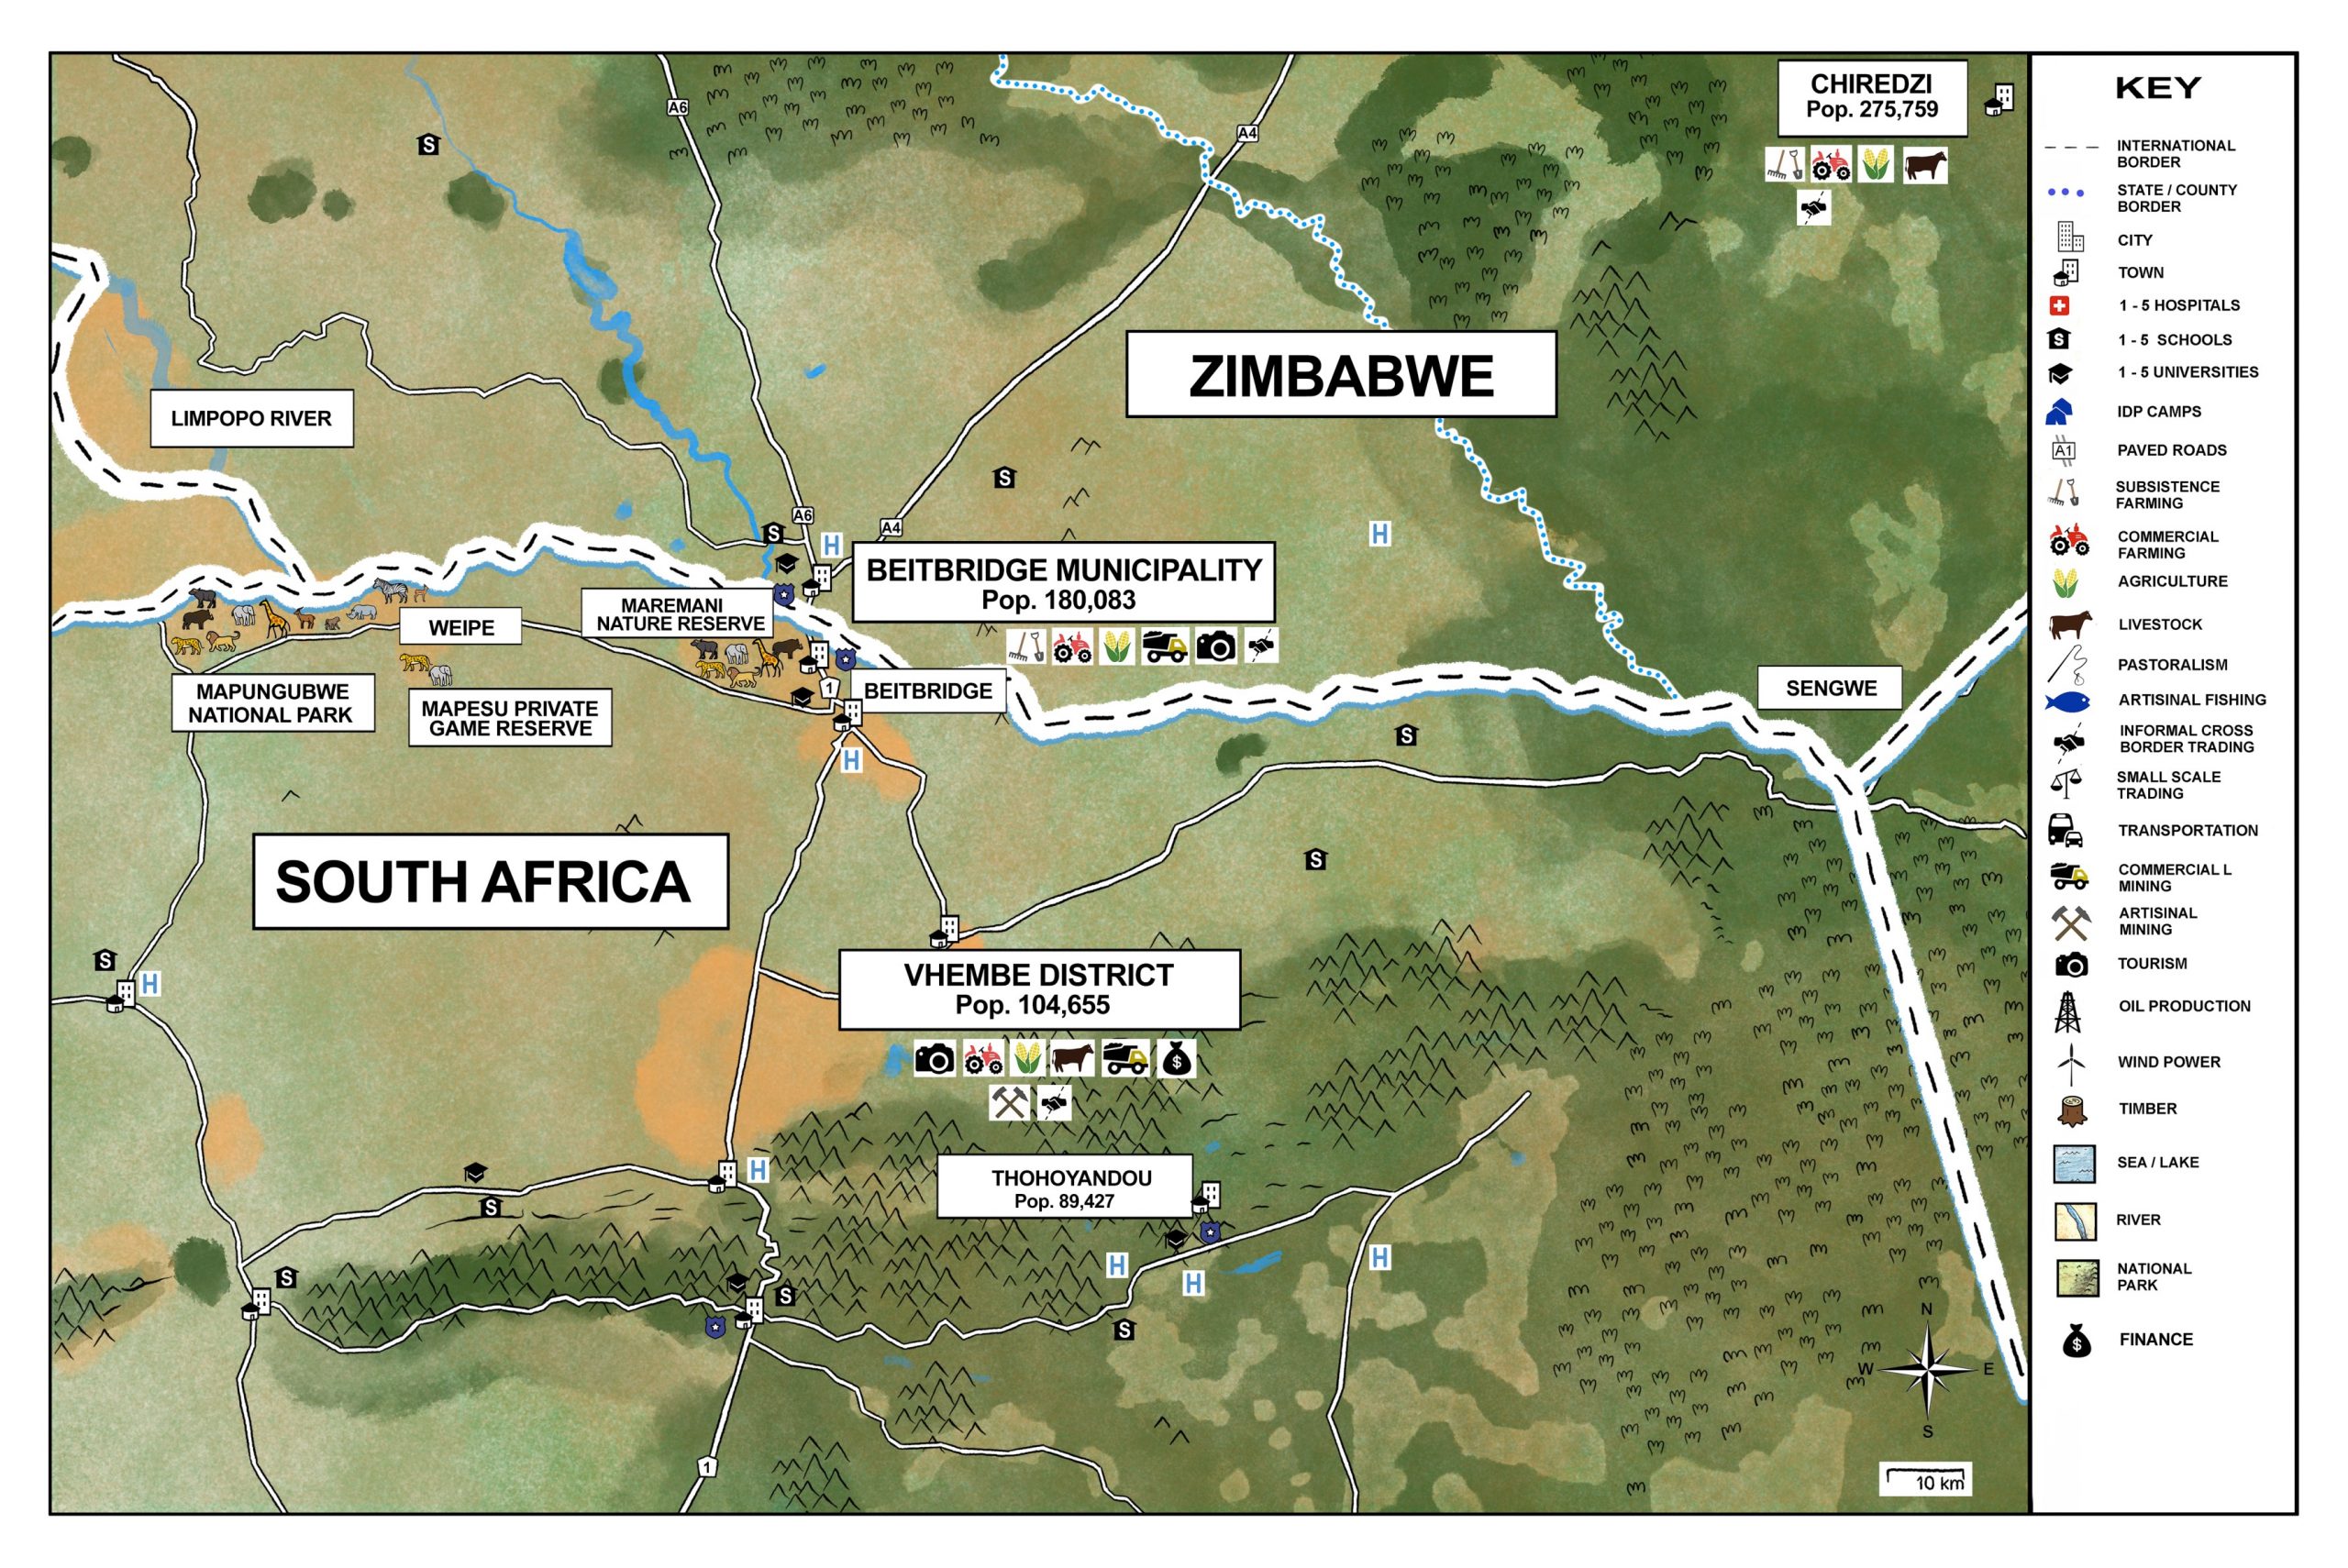 SOUTH AFRICA - ZIMBABWE_illustration